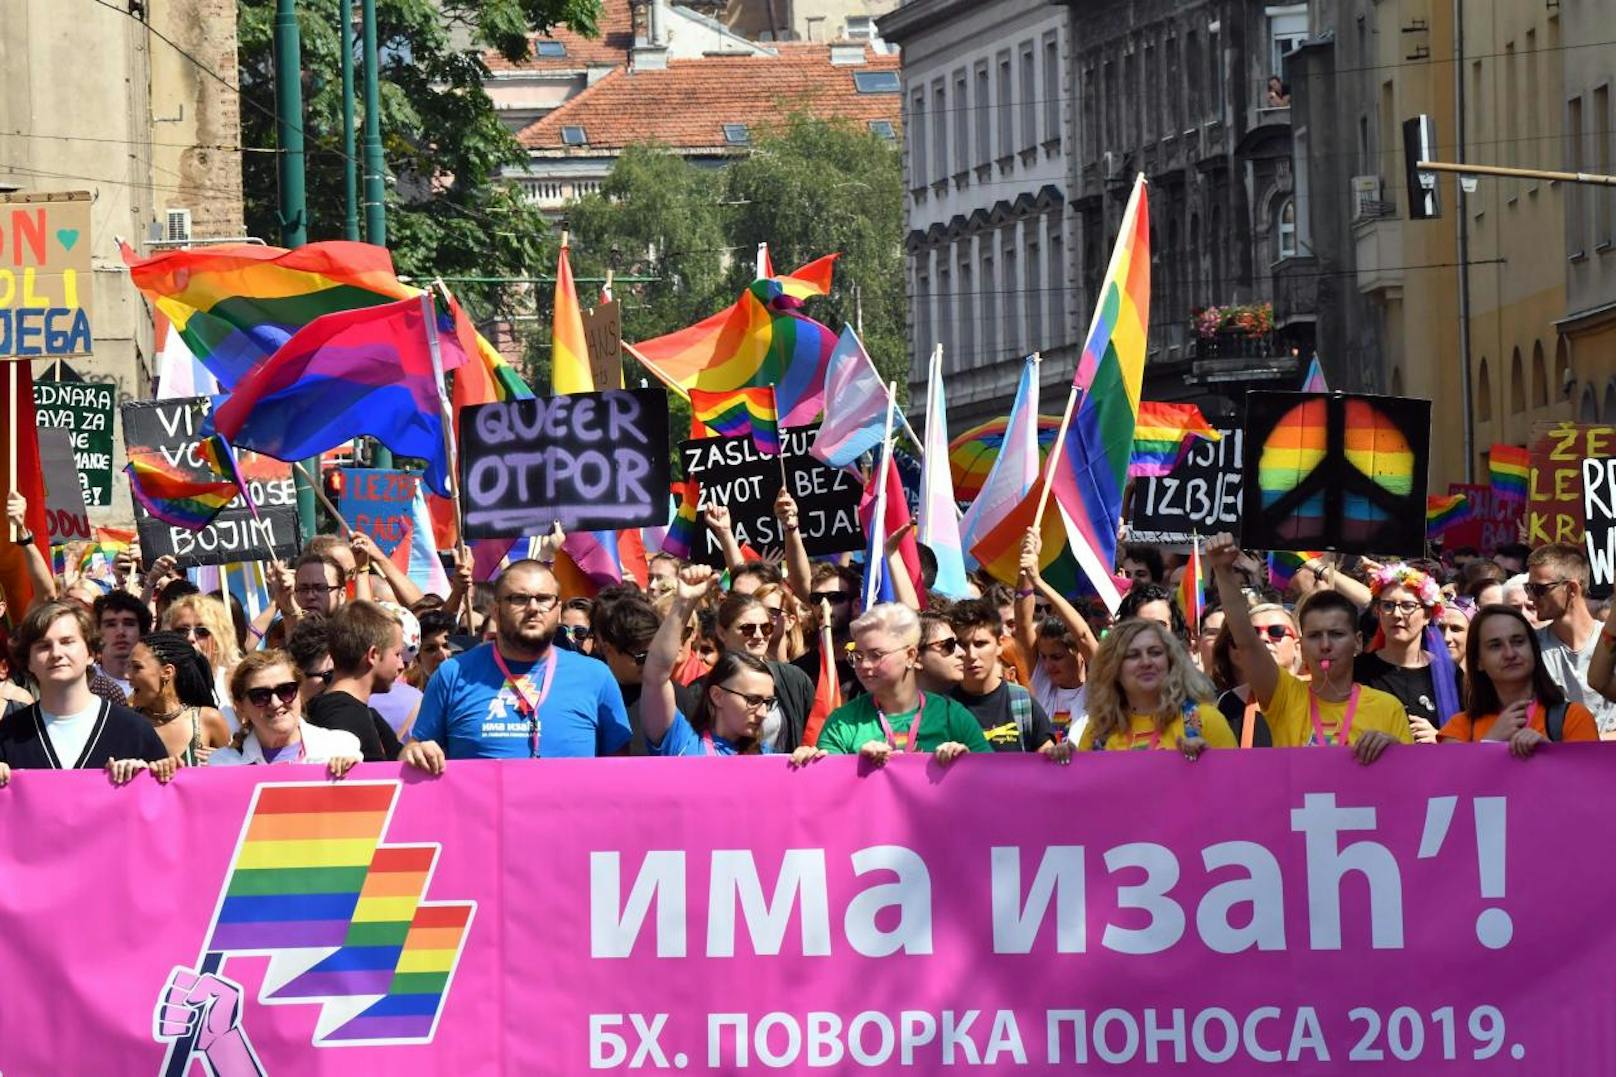 Die LGBTQ-Community zeigte sich zum ersten Mal stolz in der bosnischen Hauptstadt.